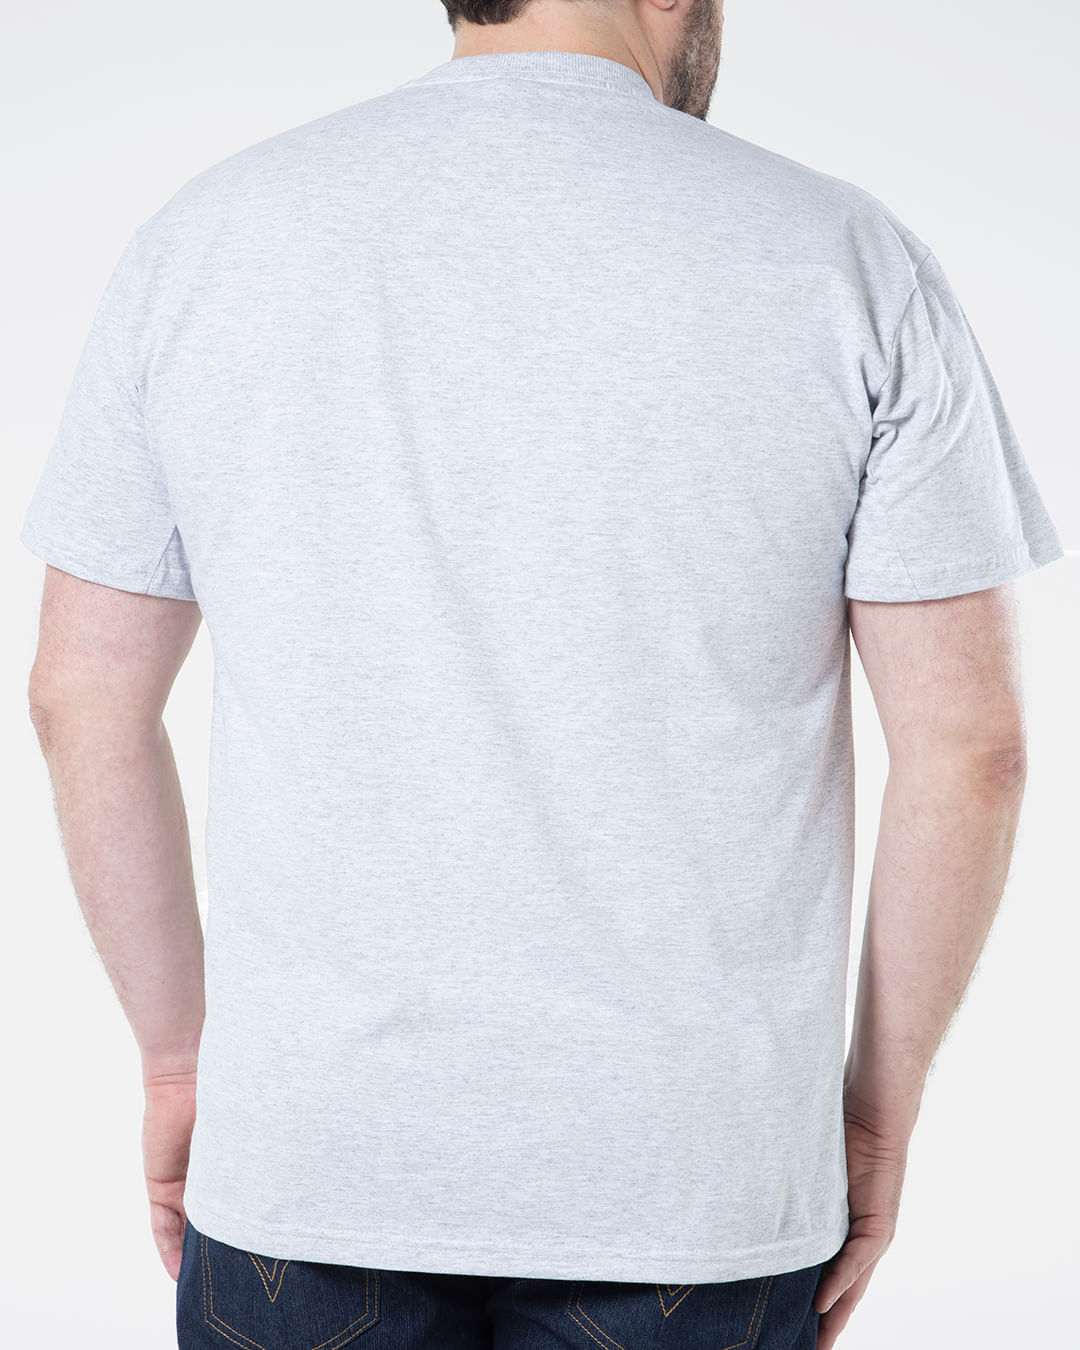 Camiseta-Masculina-Plus-Size-Estampa-Camuflada-Ecko-Branca